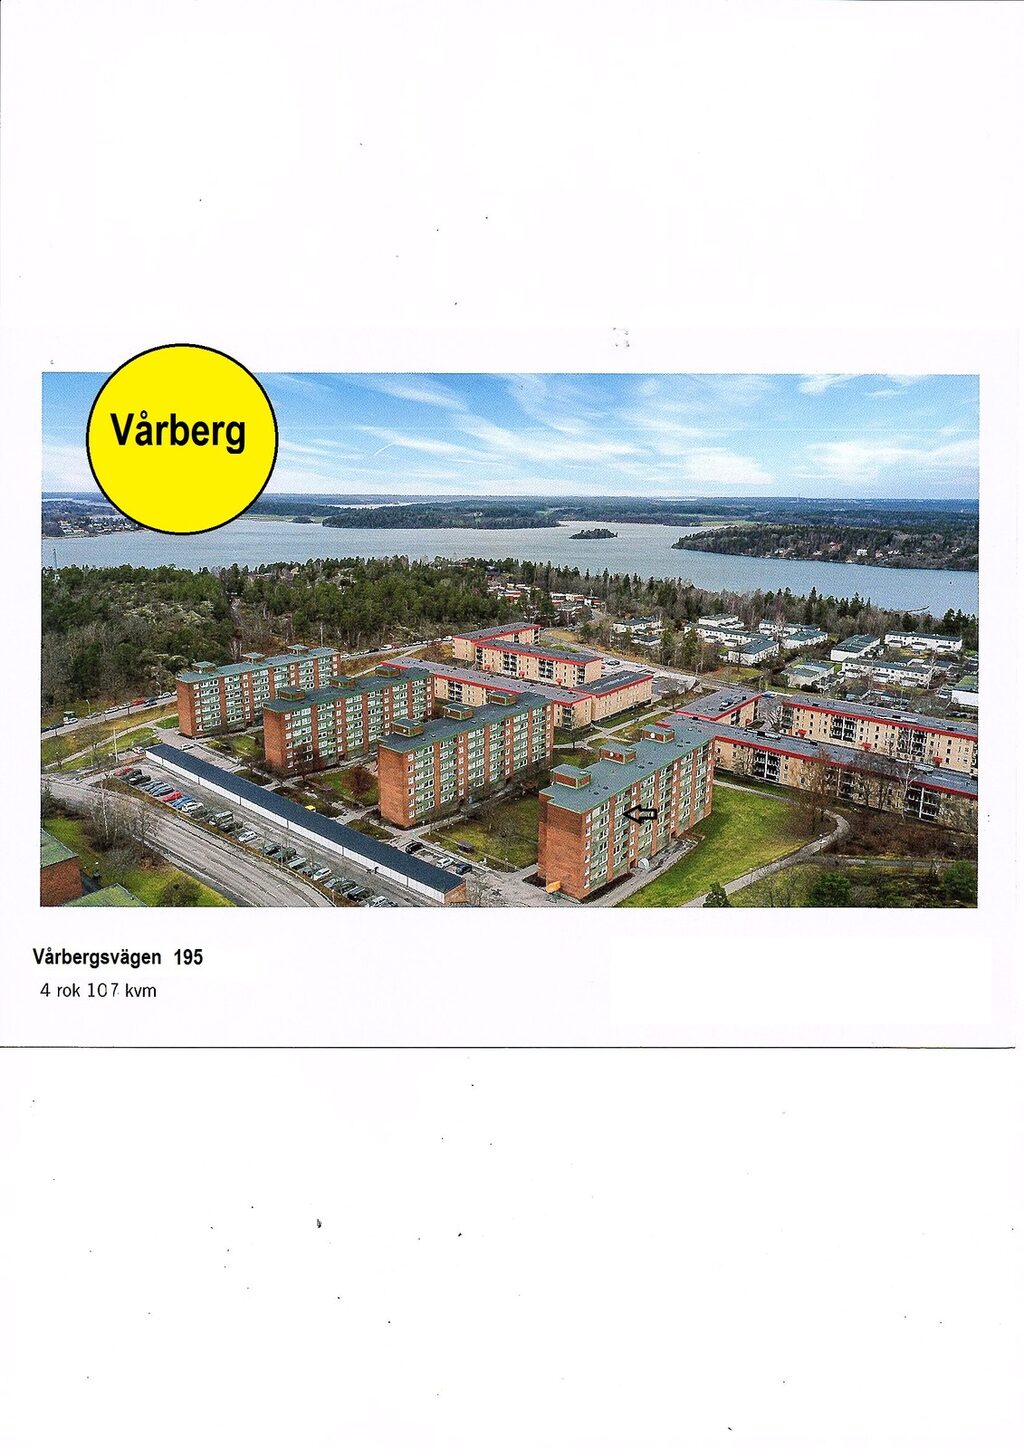 Lägenhetsbyte - Vårbergsvägen 195